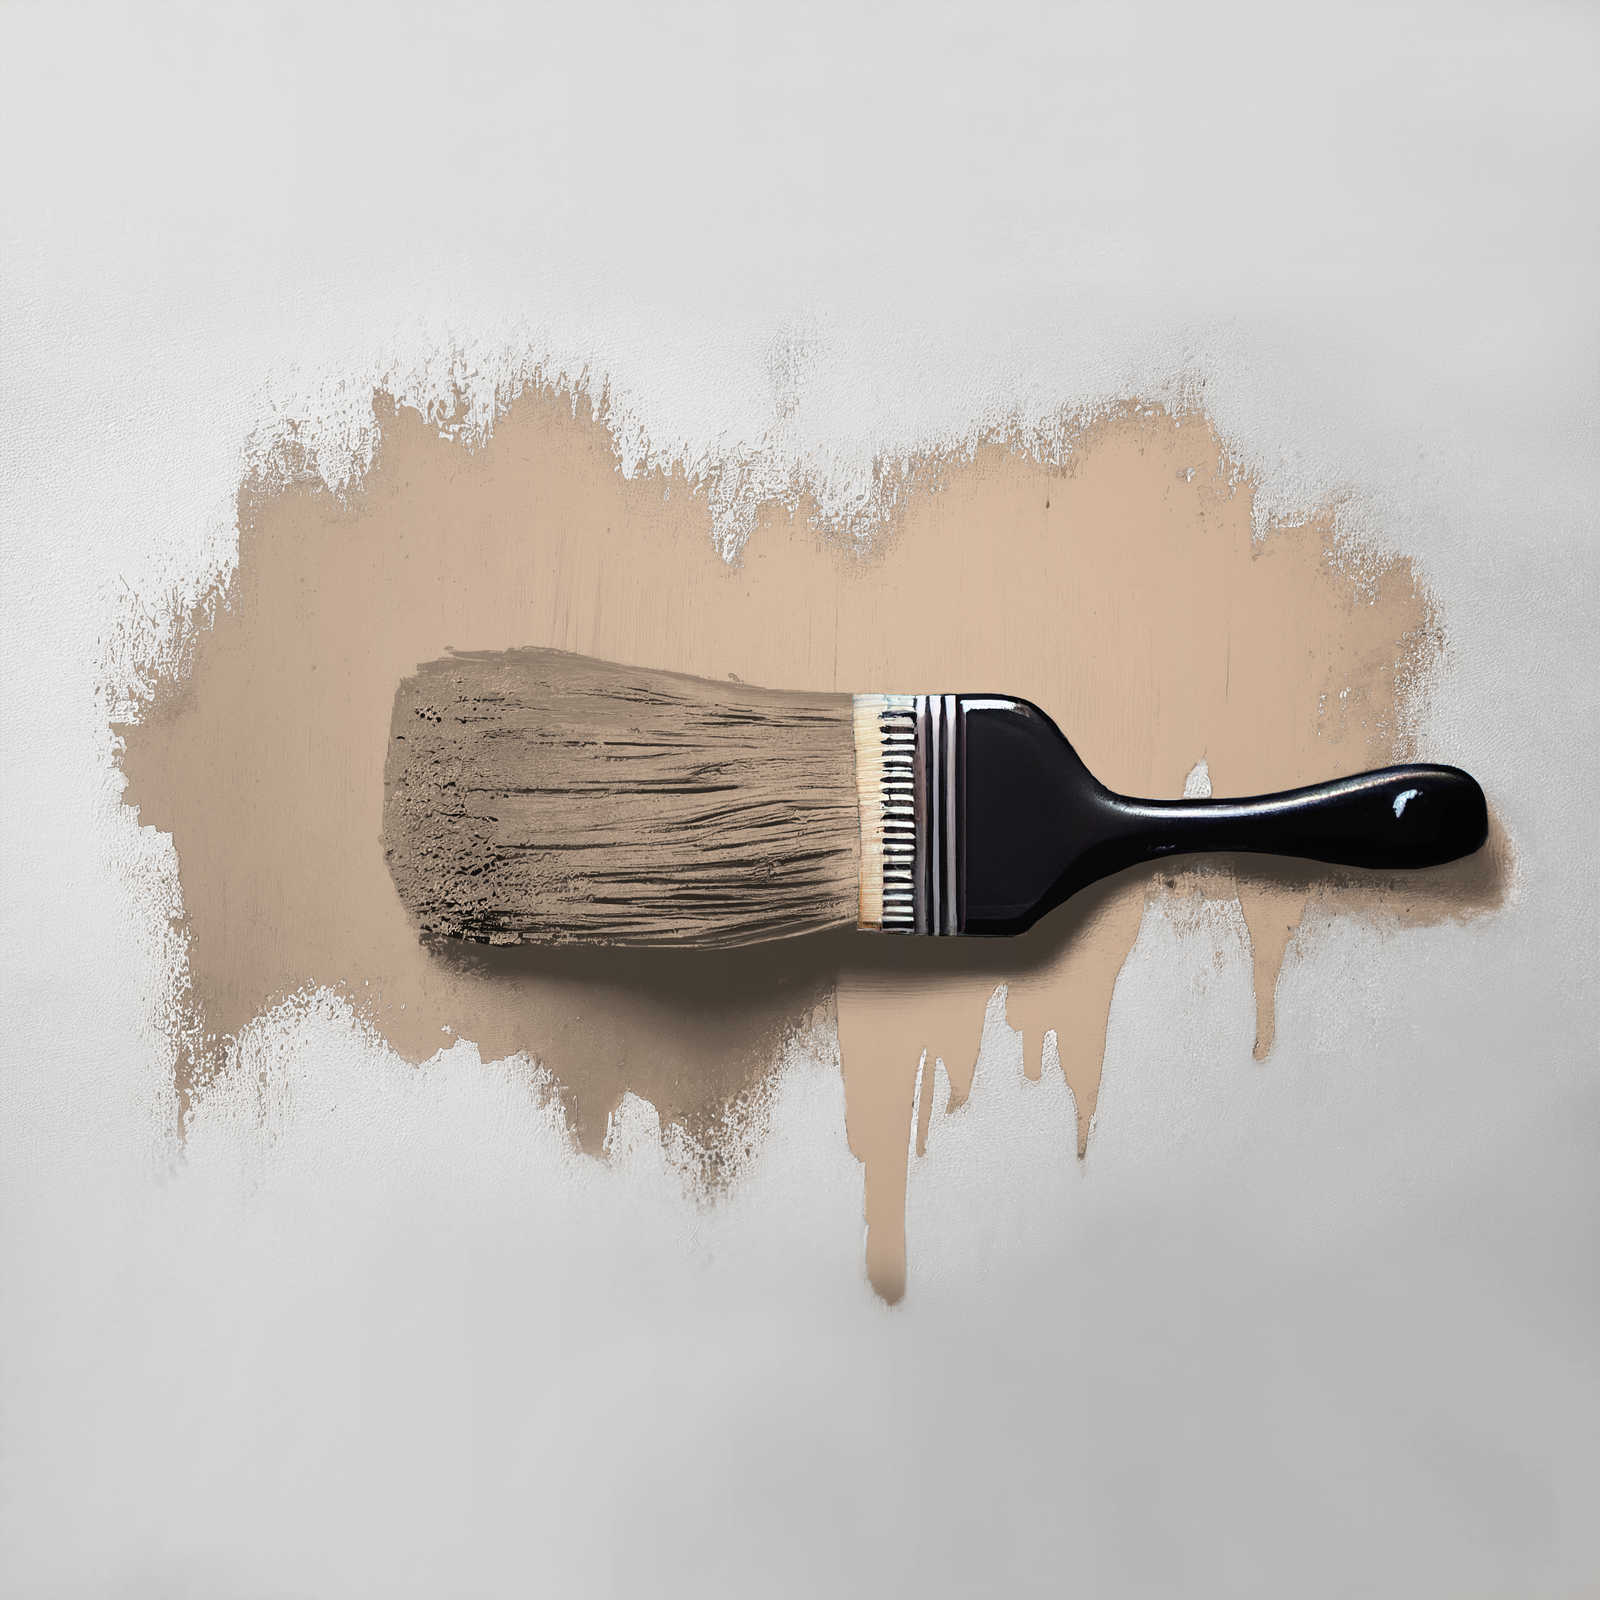             Pittura murale TCK6010 »Latte Macchhiato« in beige naturale – 5,0 litri
        